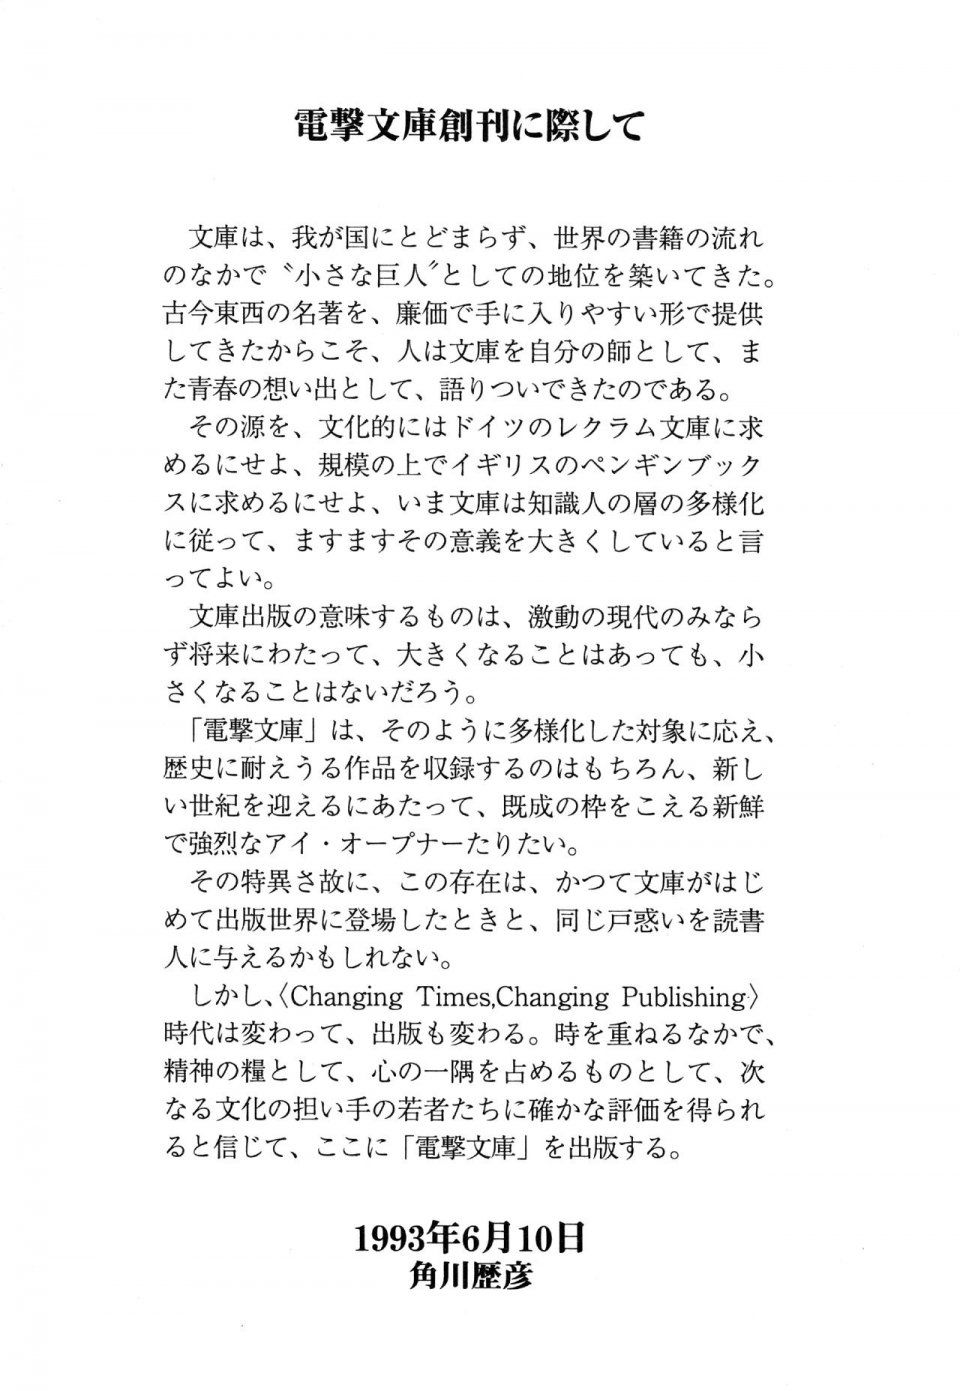 Kyoukai Senjou no Horizon LN Vol 14(6B) - Photo #839